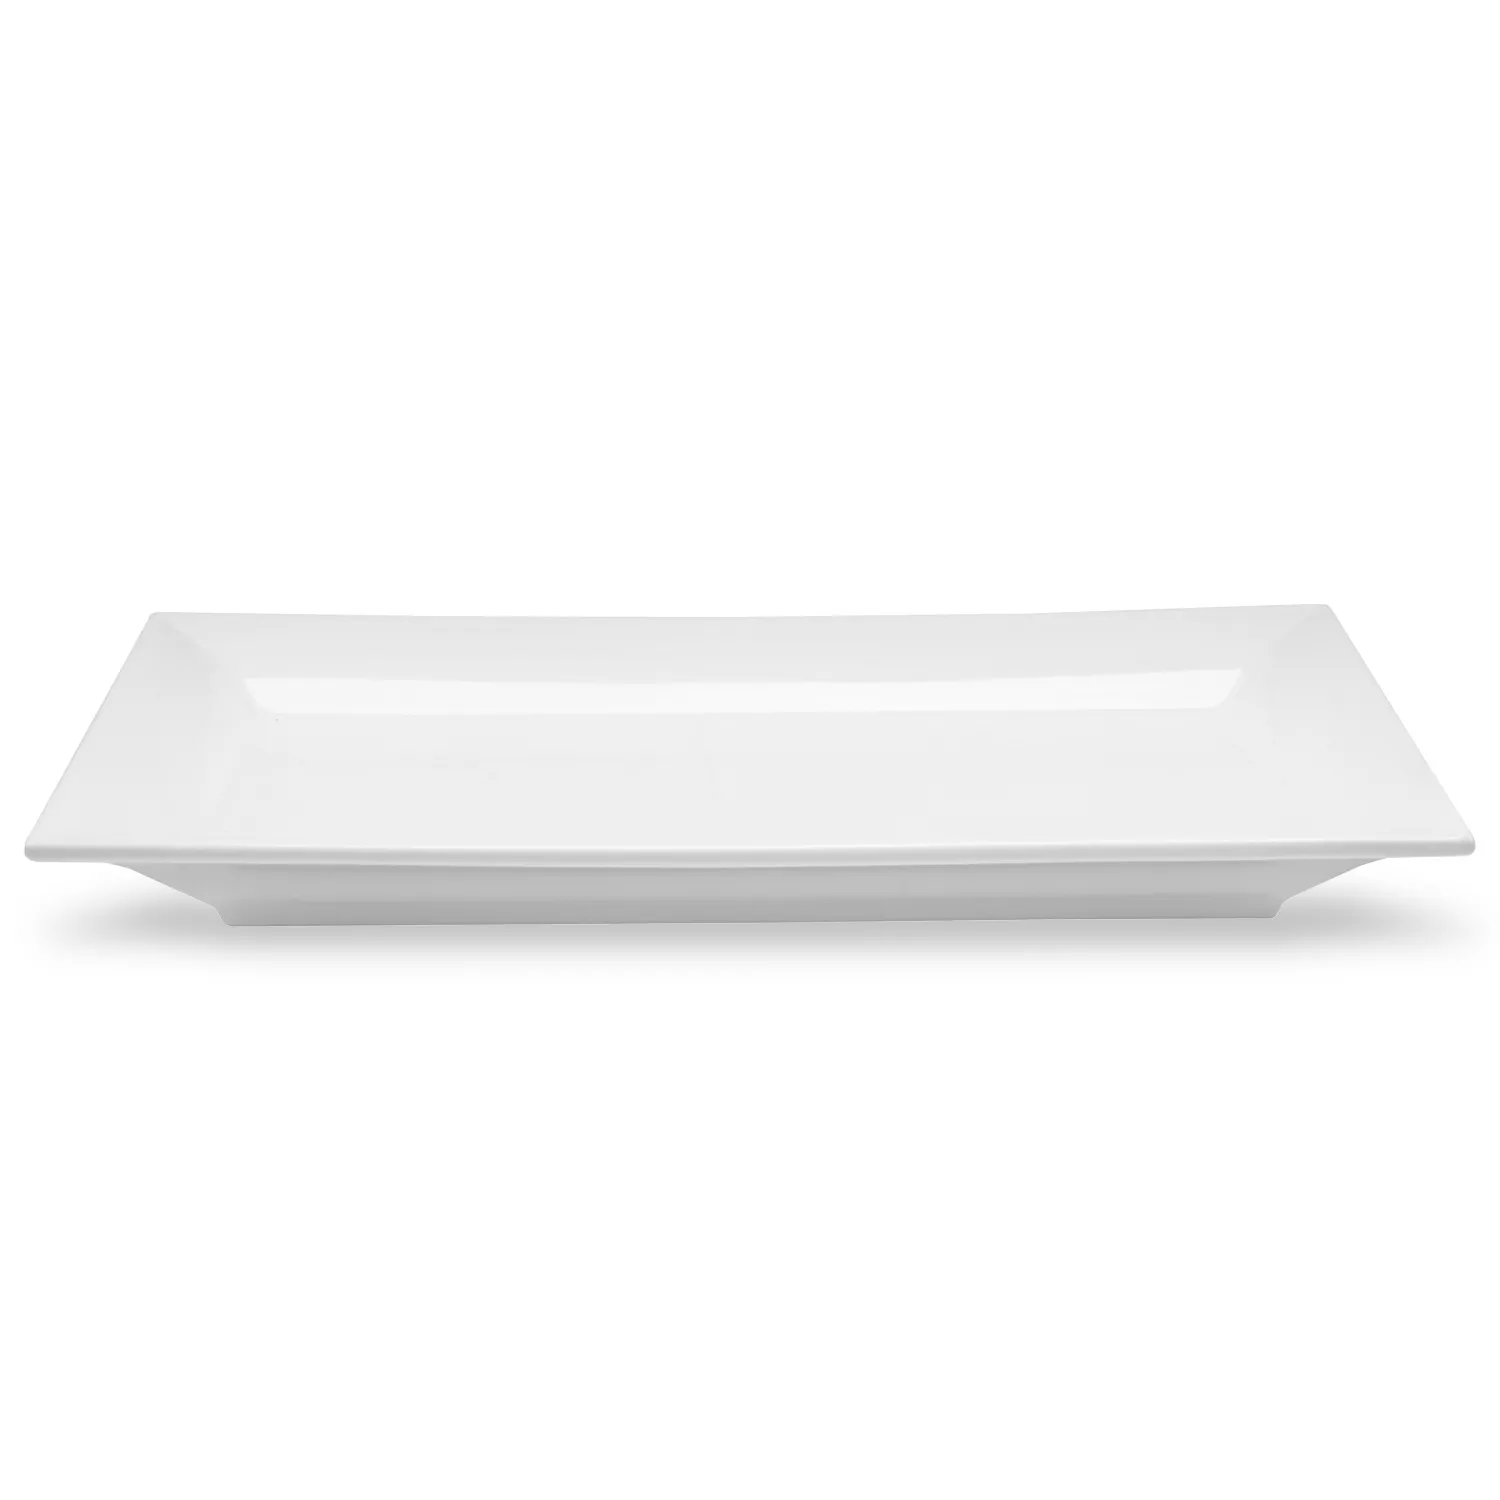 Sur La Table Italian Whiteware Rectangular Serving Platter